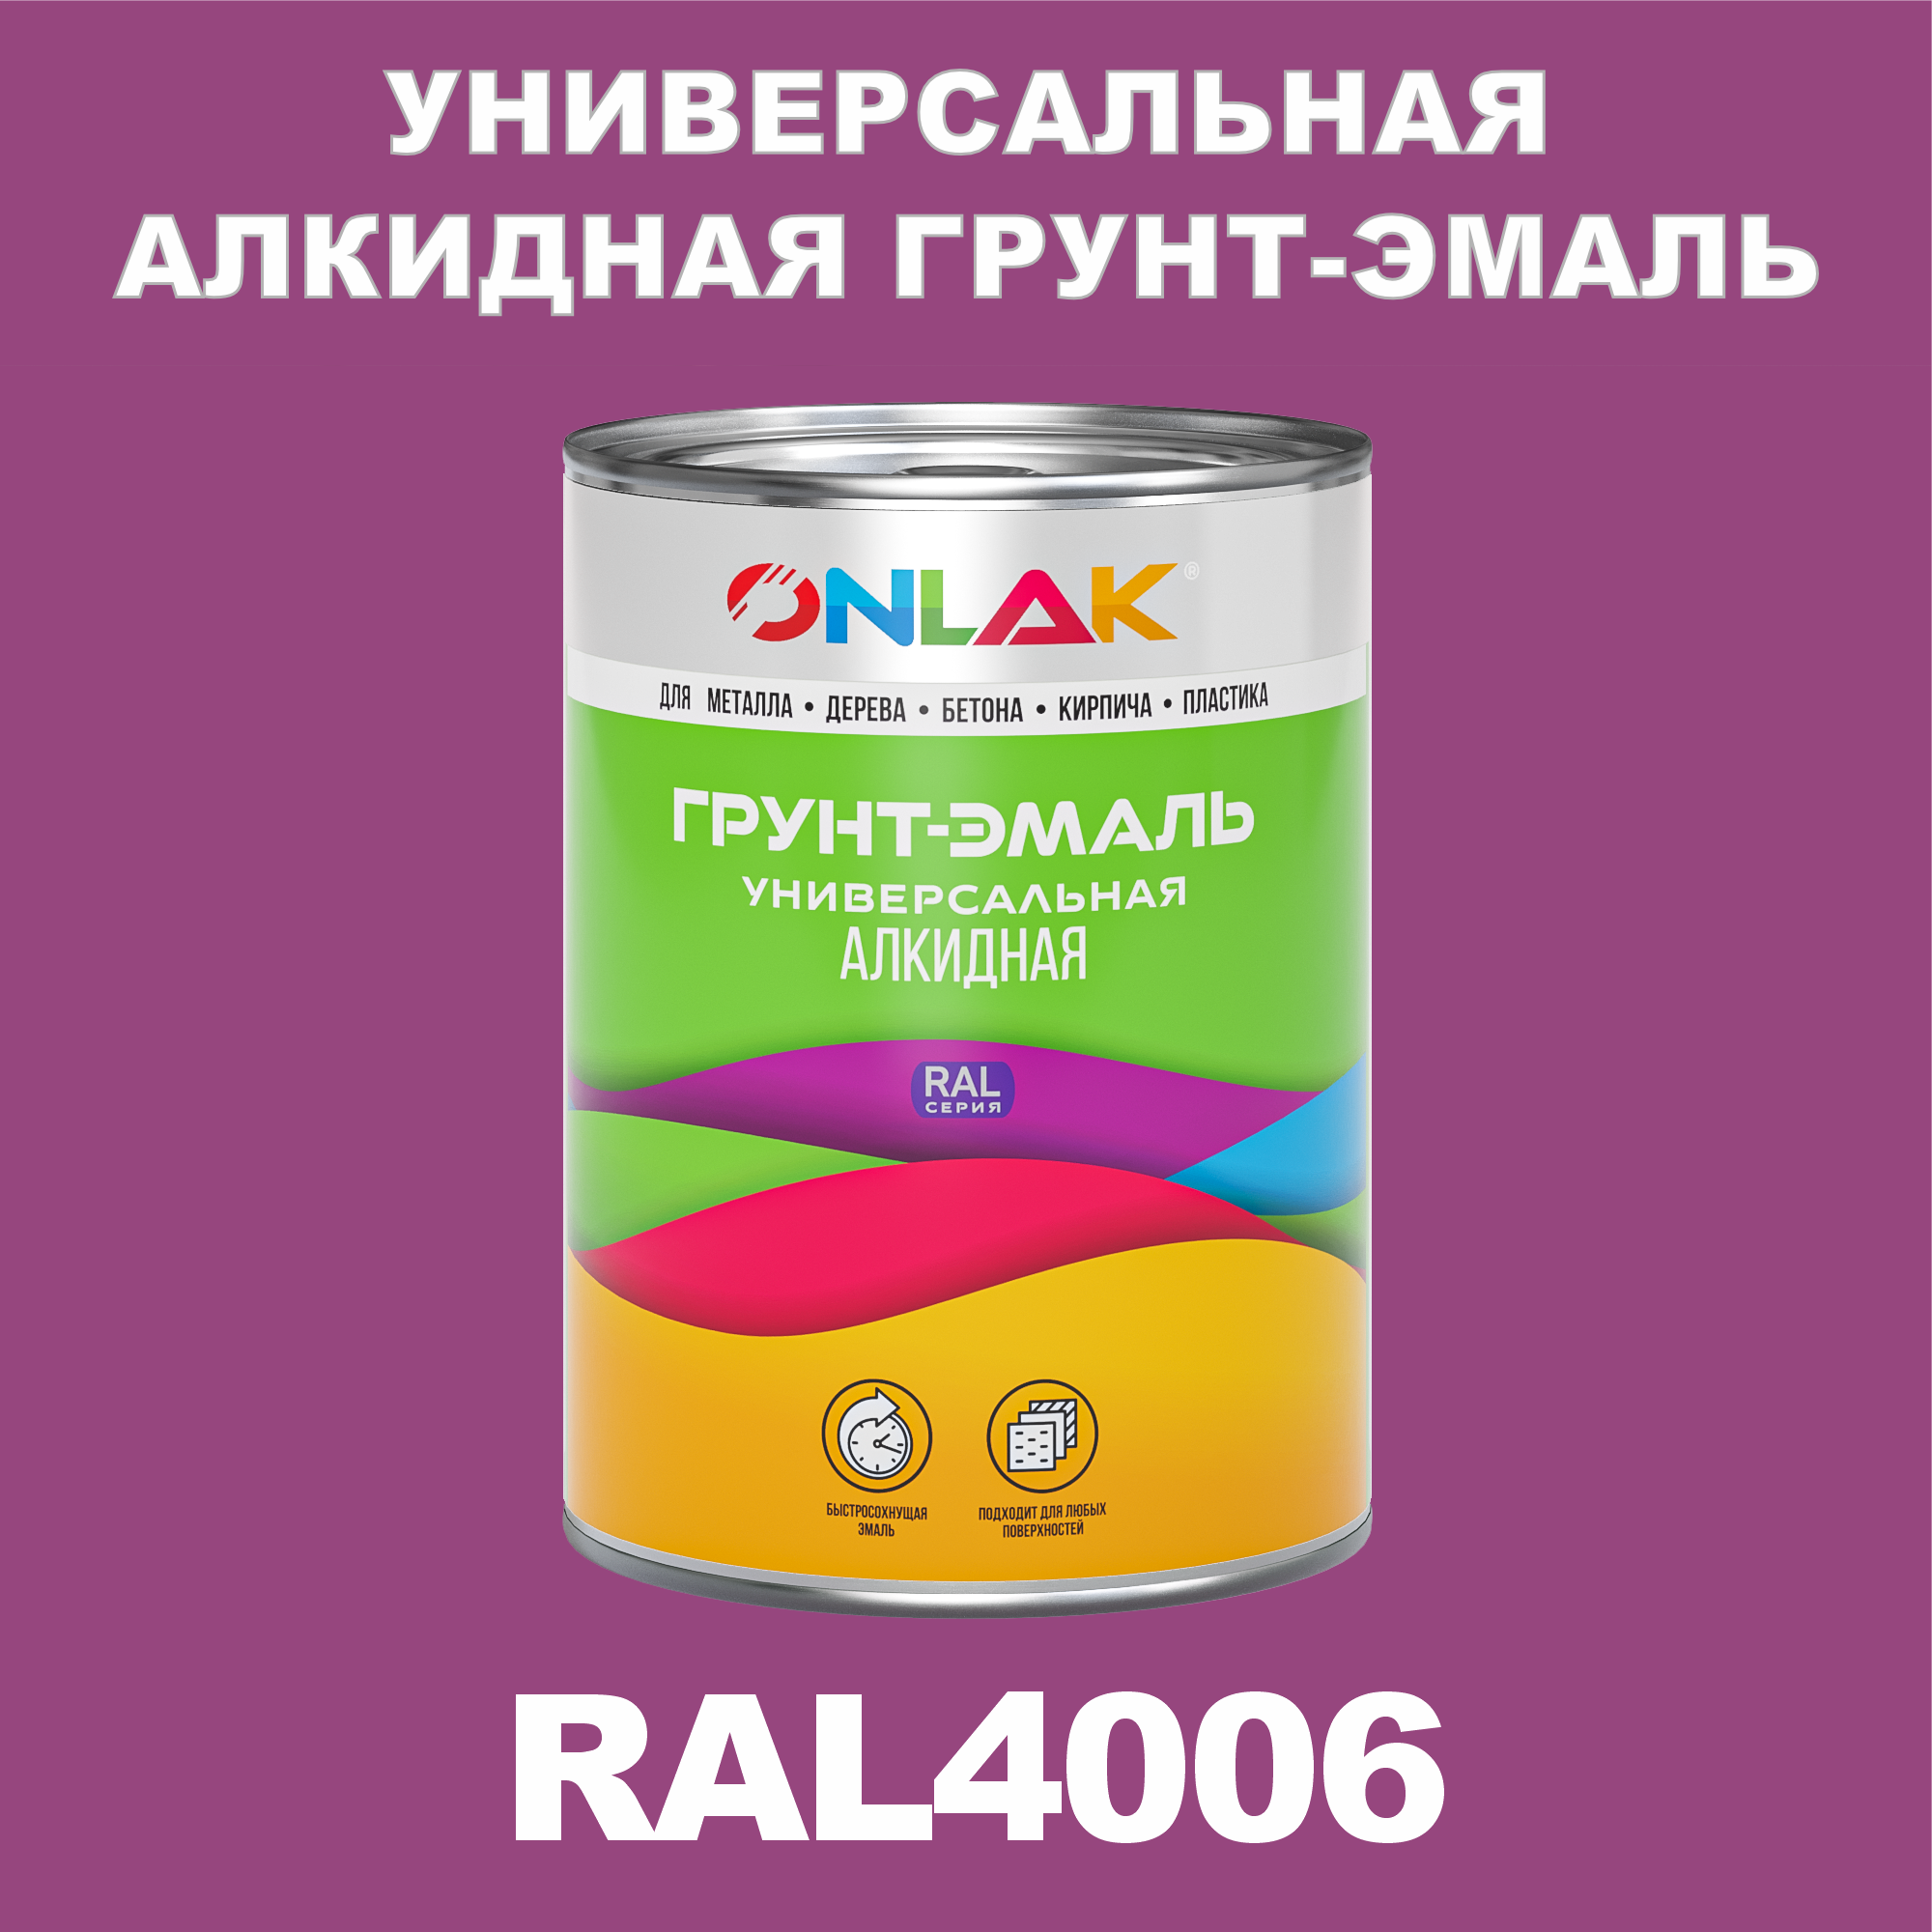 Грунт-эмаль ONLAK 1К RAL4006 антикоррозионная алкидная по металлу по ржавчине 1 кг антикоррозионная грунт эмаль onlak ral4001 фиолетовый 656 мл